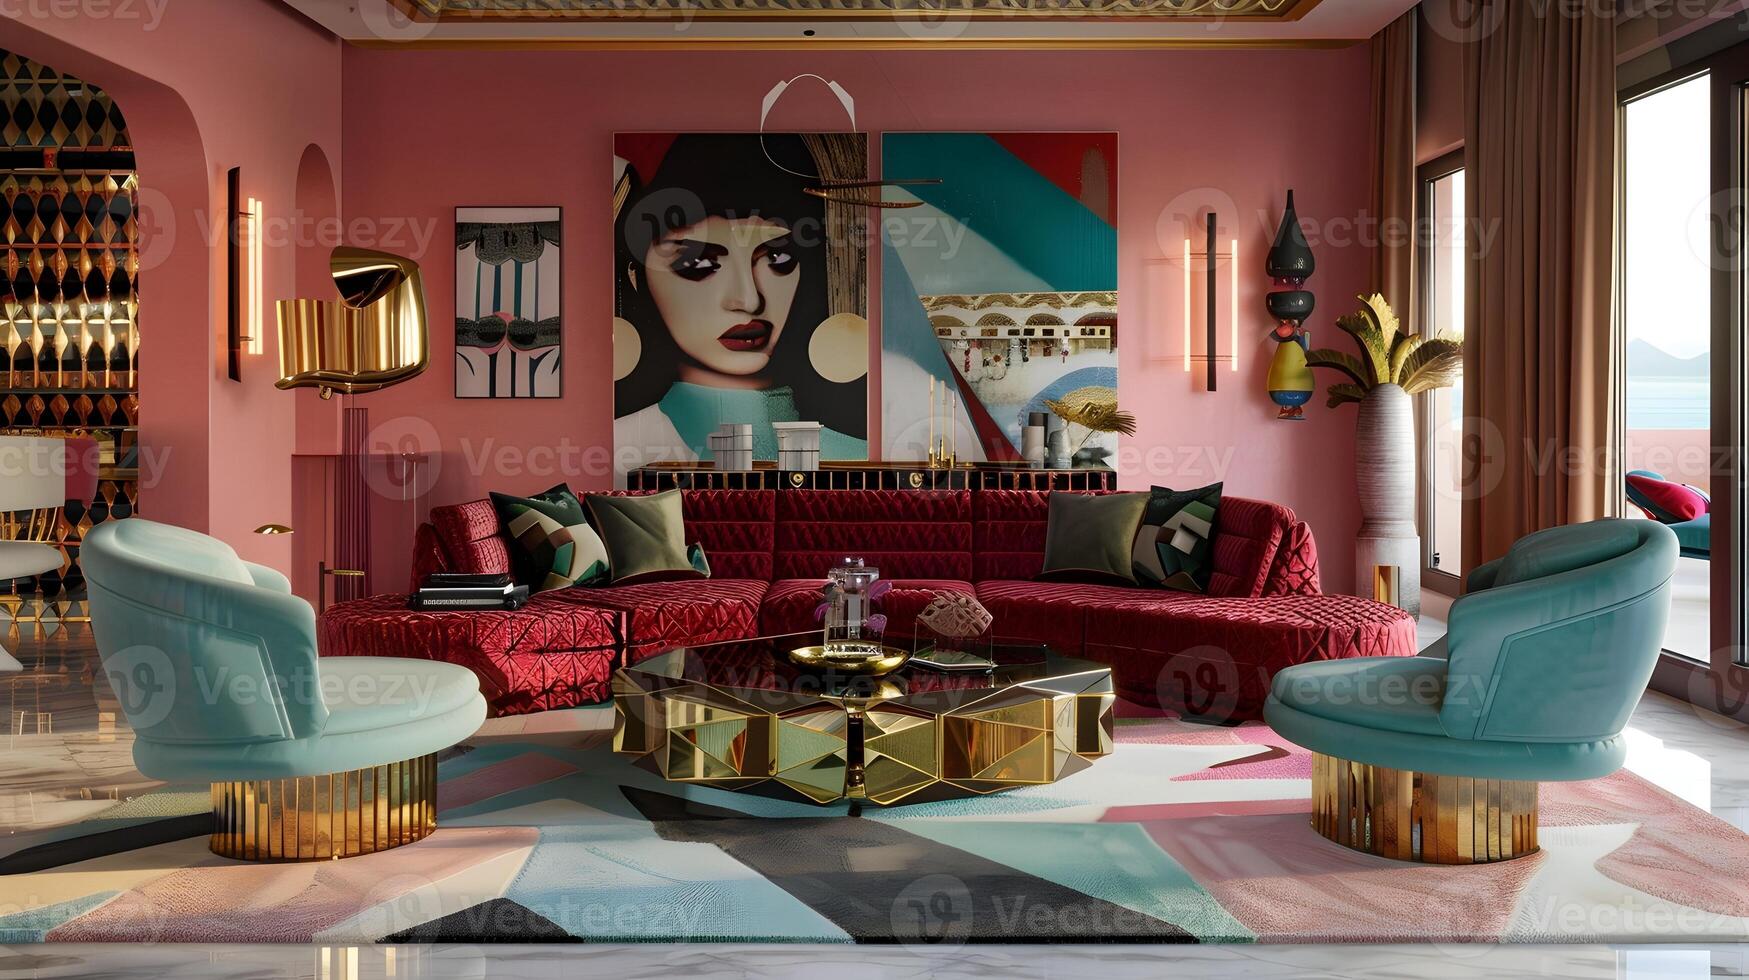 överdådigt dekorerad rik levande rum med vibrerande Färg palett och avantgarde- konst bitar visa upp samtida interiör design estetisk foto